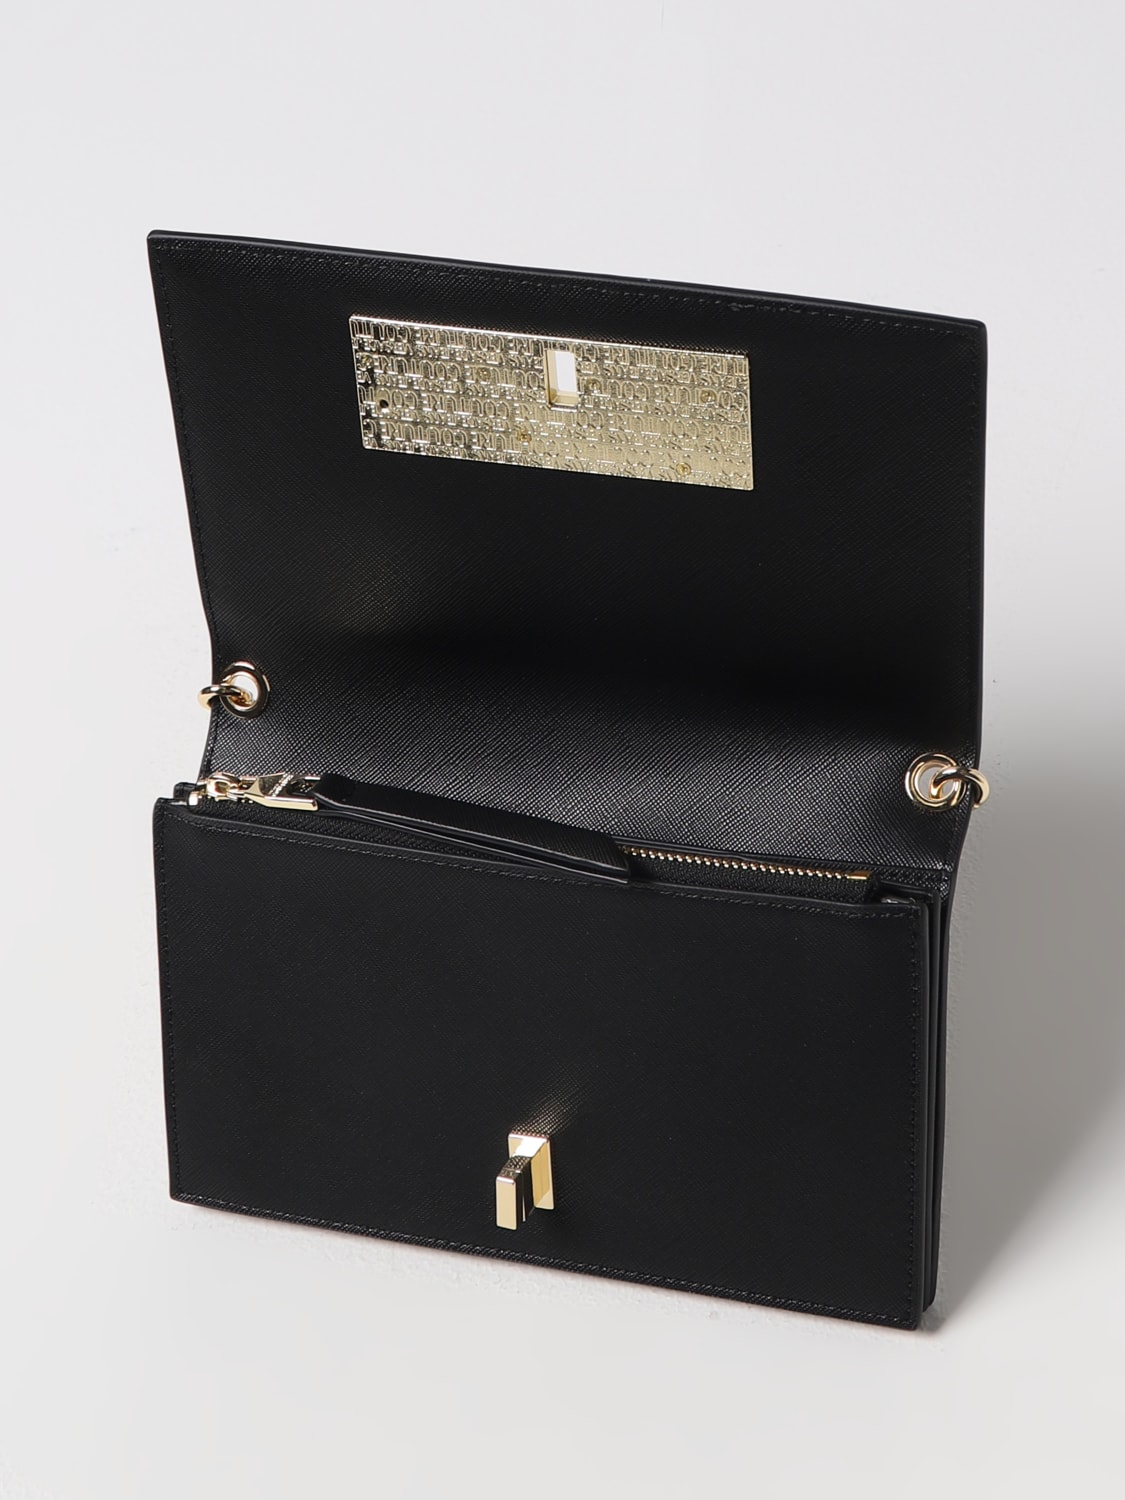 Portafoglio Versace Jeans Couture: Borsa wallet Versace Jeans Couture in pelle sintetica saffiano nero 2